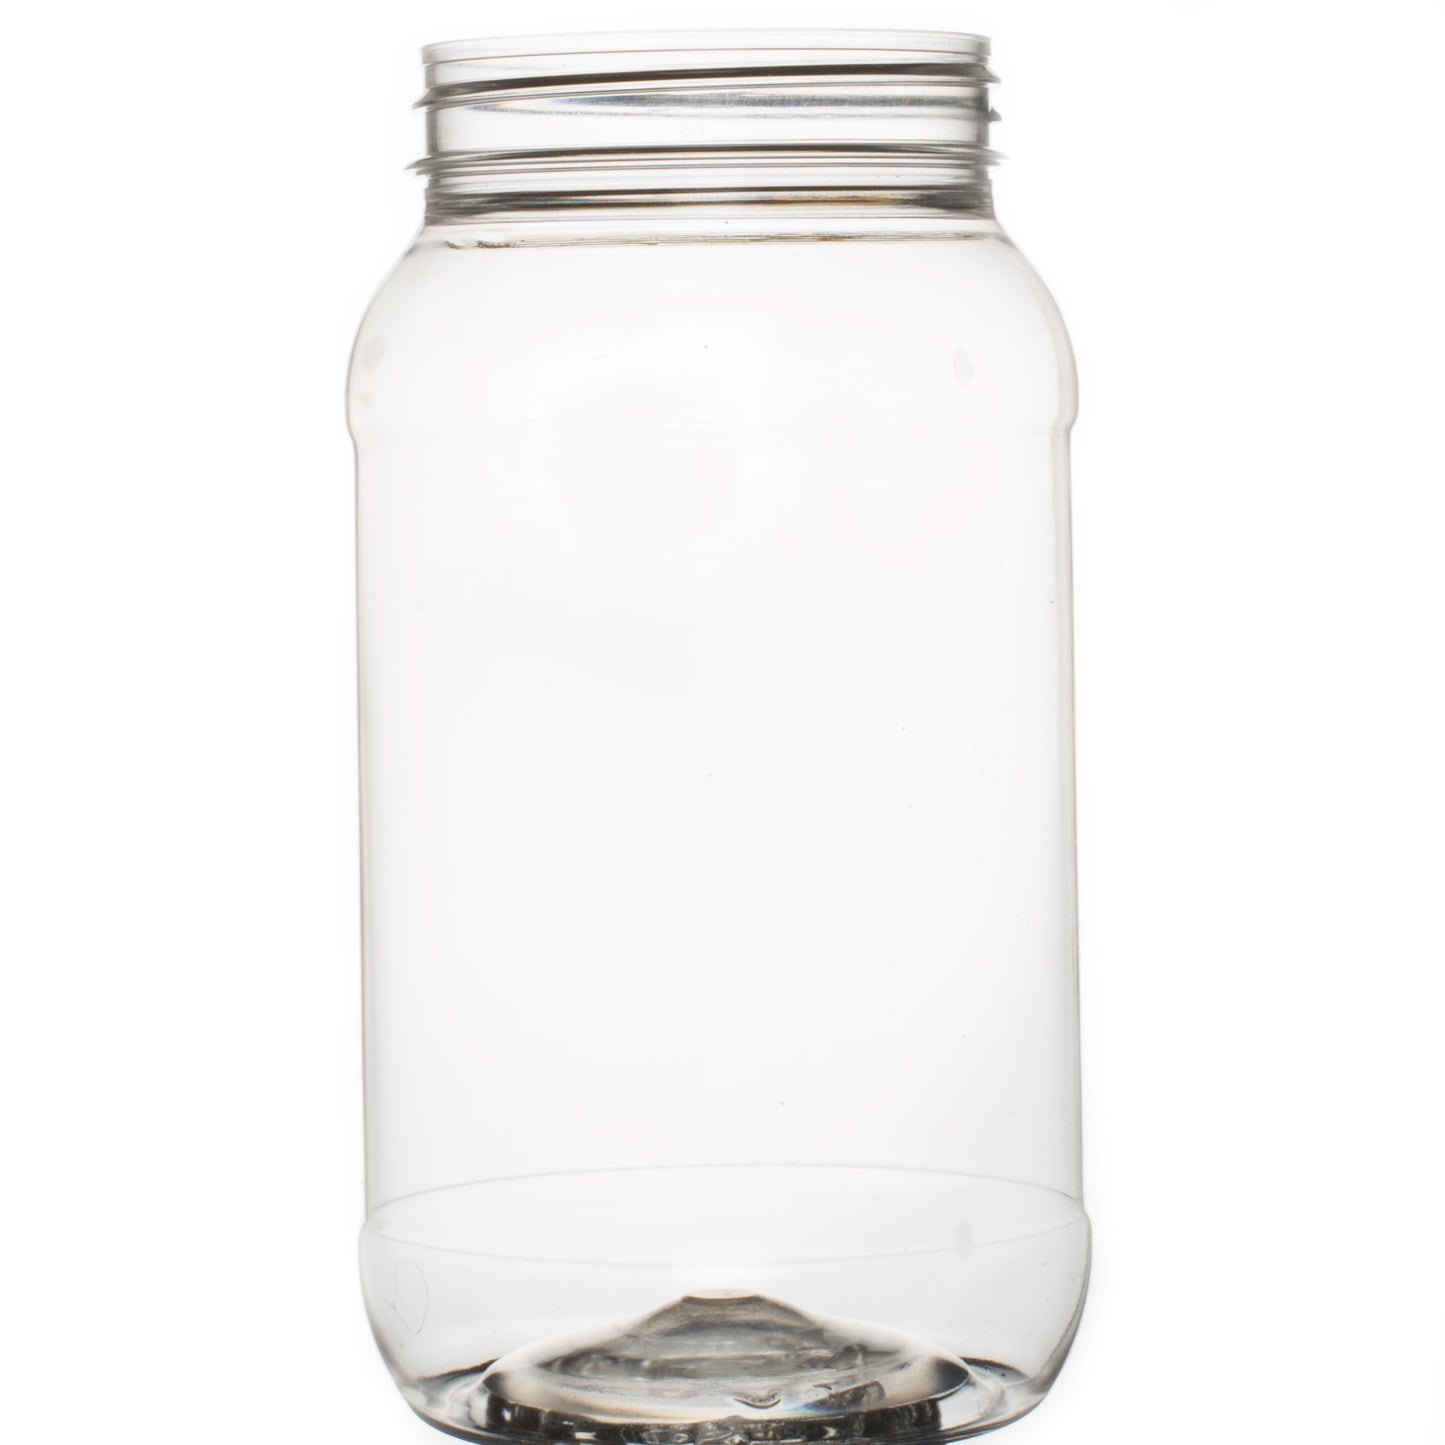 Honey Bottles with Lids - 1kg/750ml Round Jar Including lid - Plastic